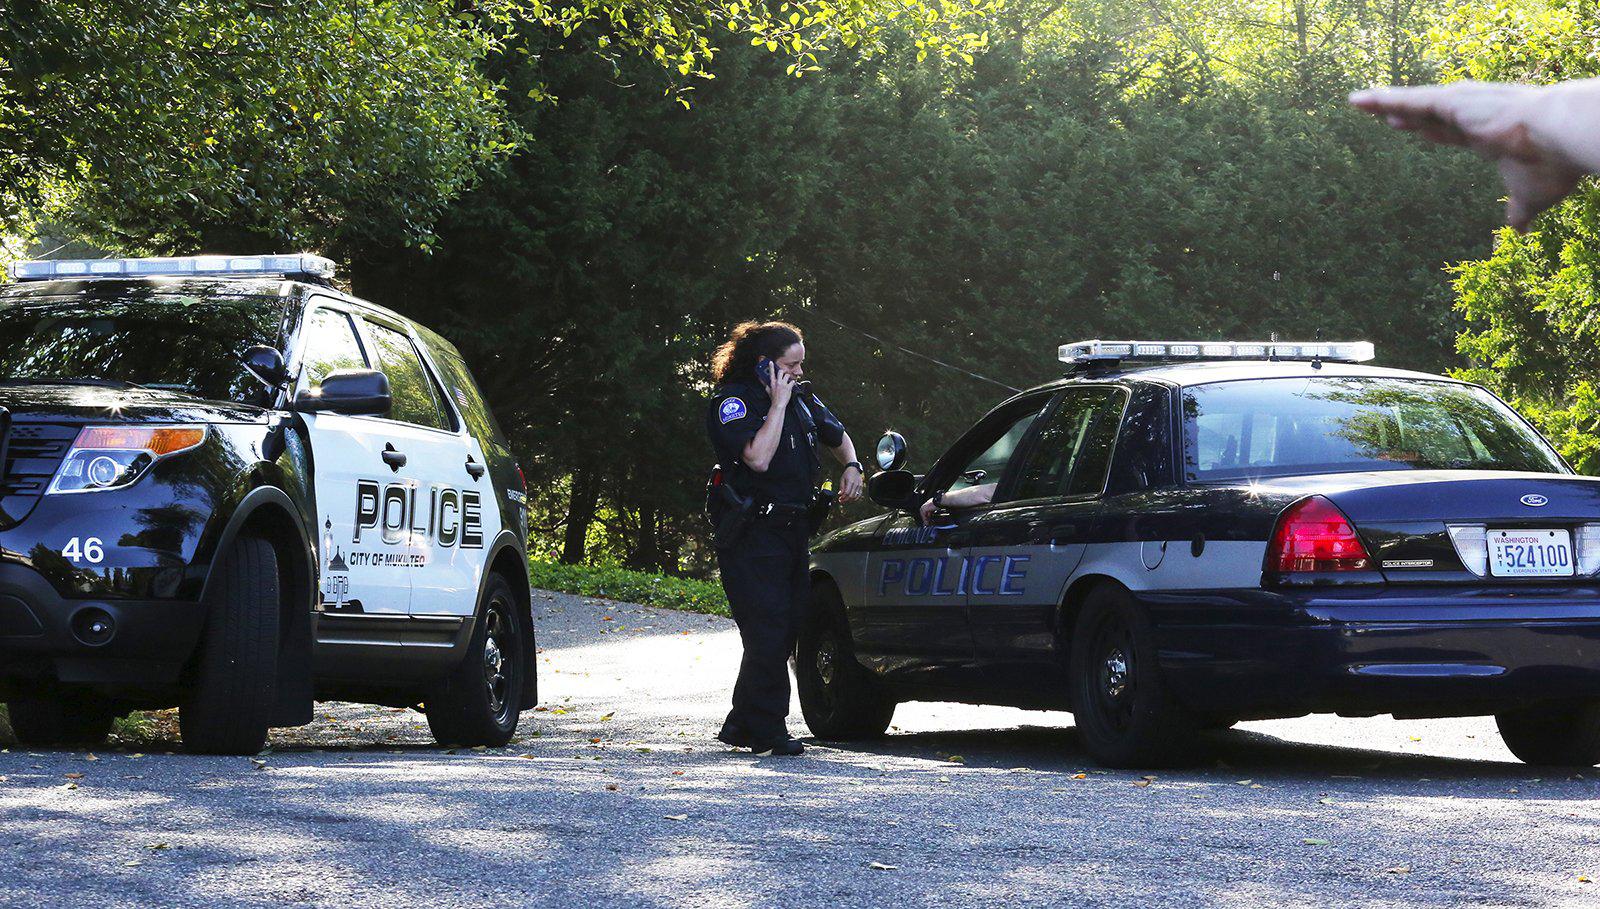 3 dead, 1 hurt in shooting near Seattle; suspect in custody | The Spokesman-Review1600 x 909